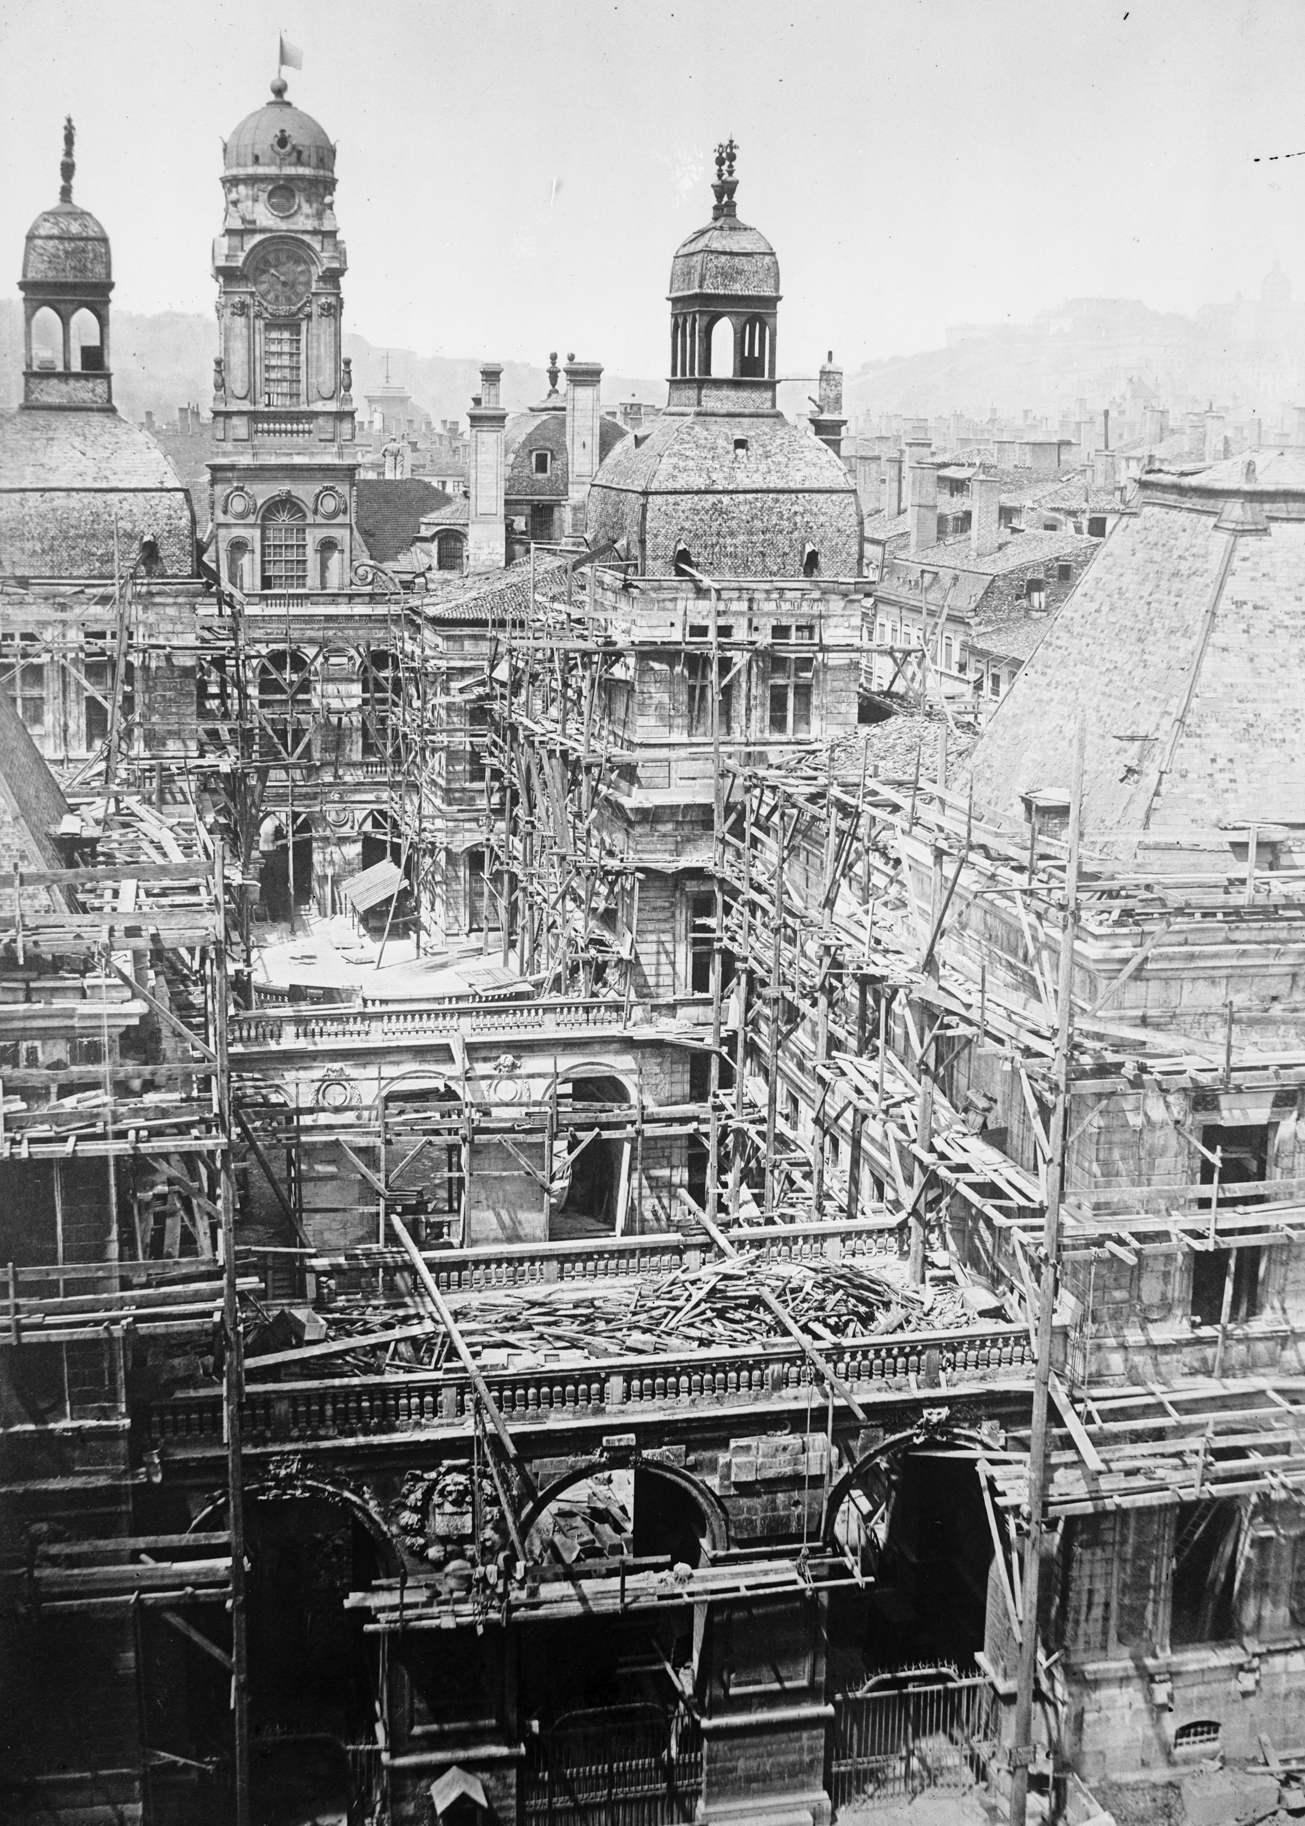 Restauration de l’Hôtel de Ville sous la direction de Tony Desjardins, architecte de la Ville, vue depuis le Grand-Théâtre par Louis Froissart (mai 1857, cote : 15PH/1/456)